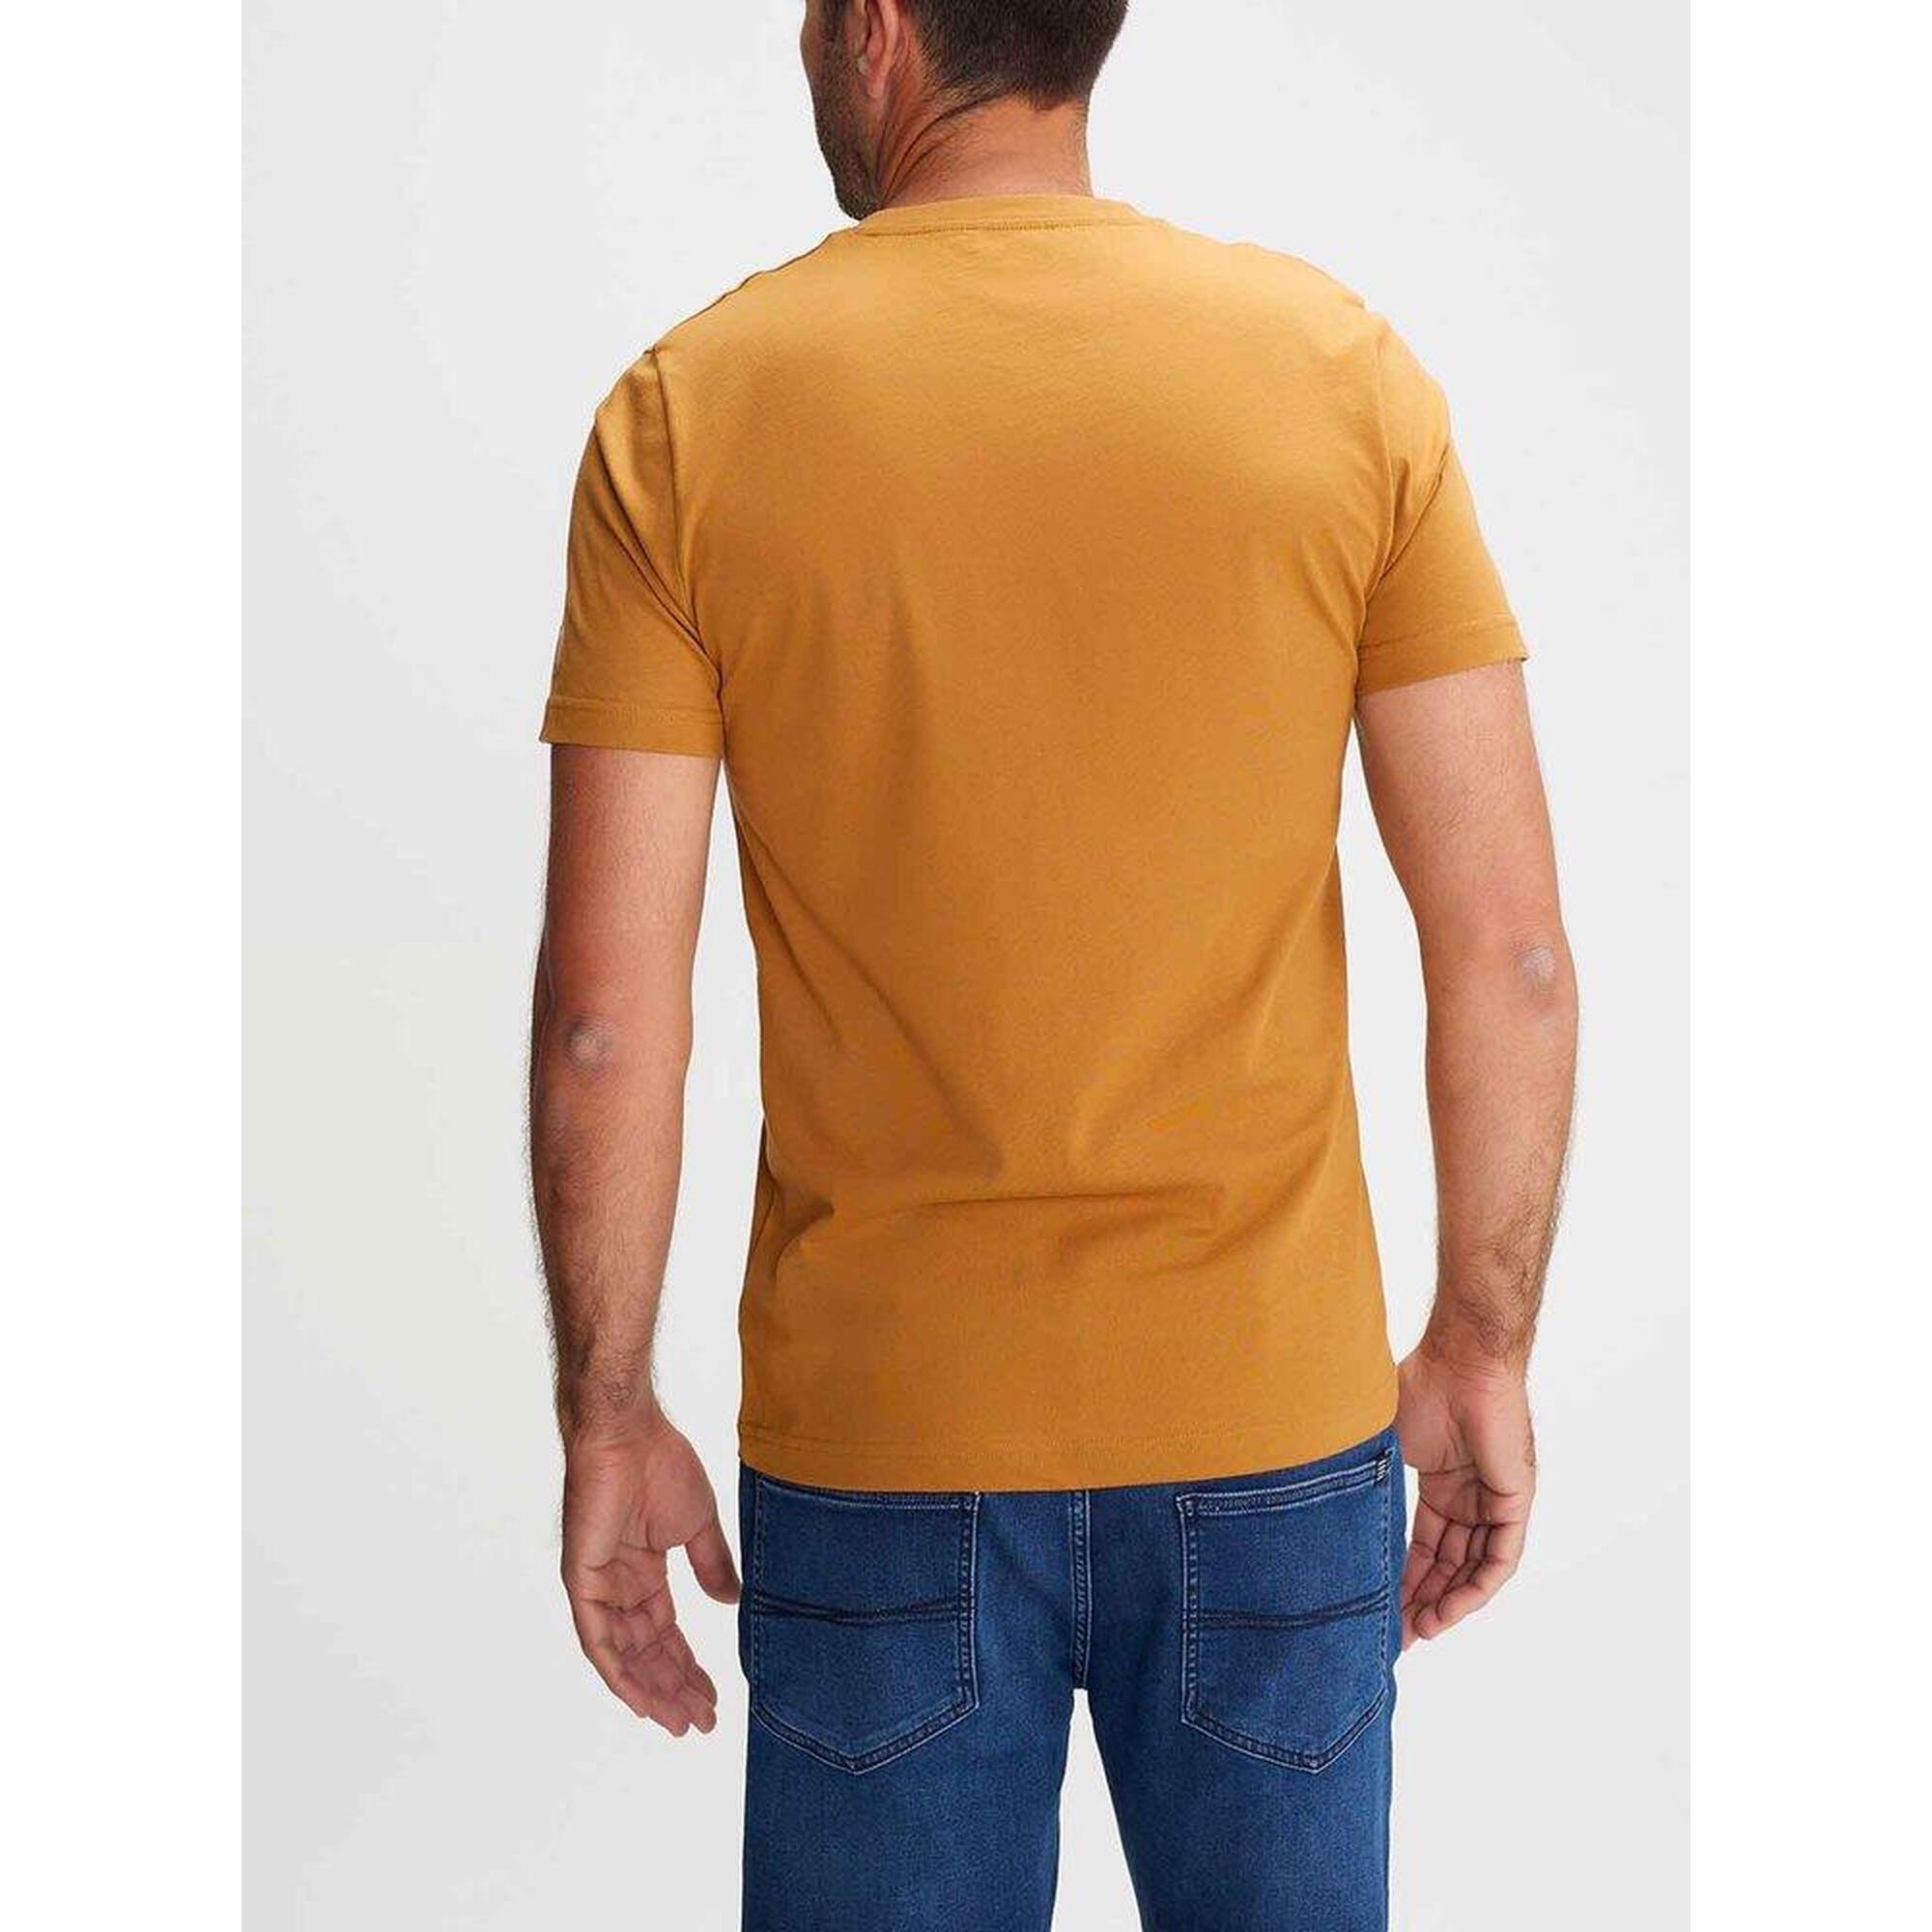 T-shirt manches courtes Homme - AMARITEE Sediment